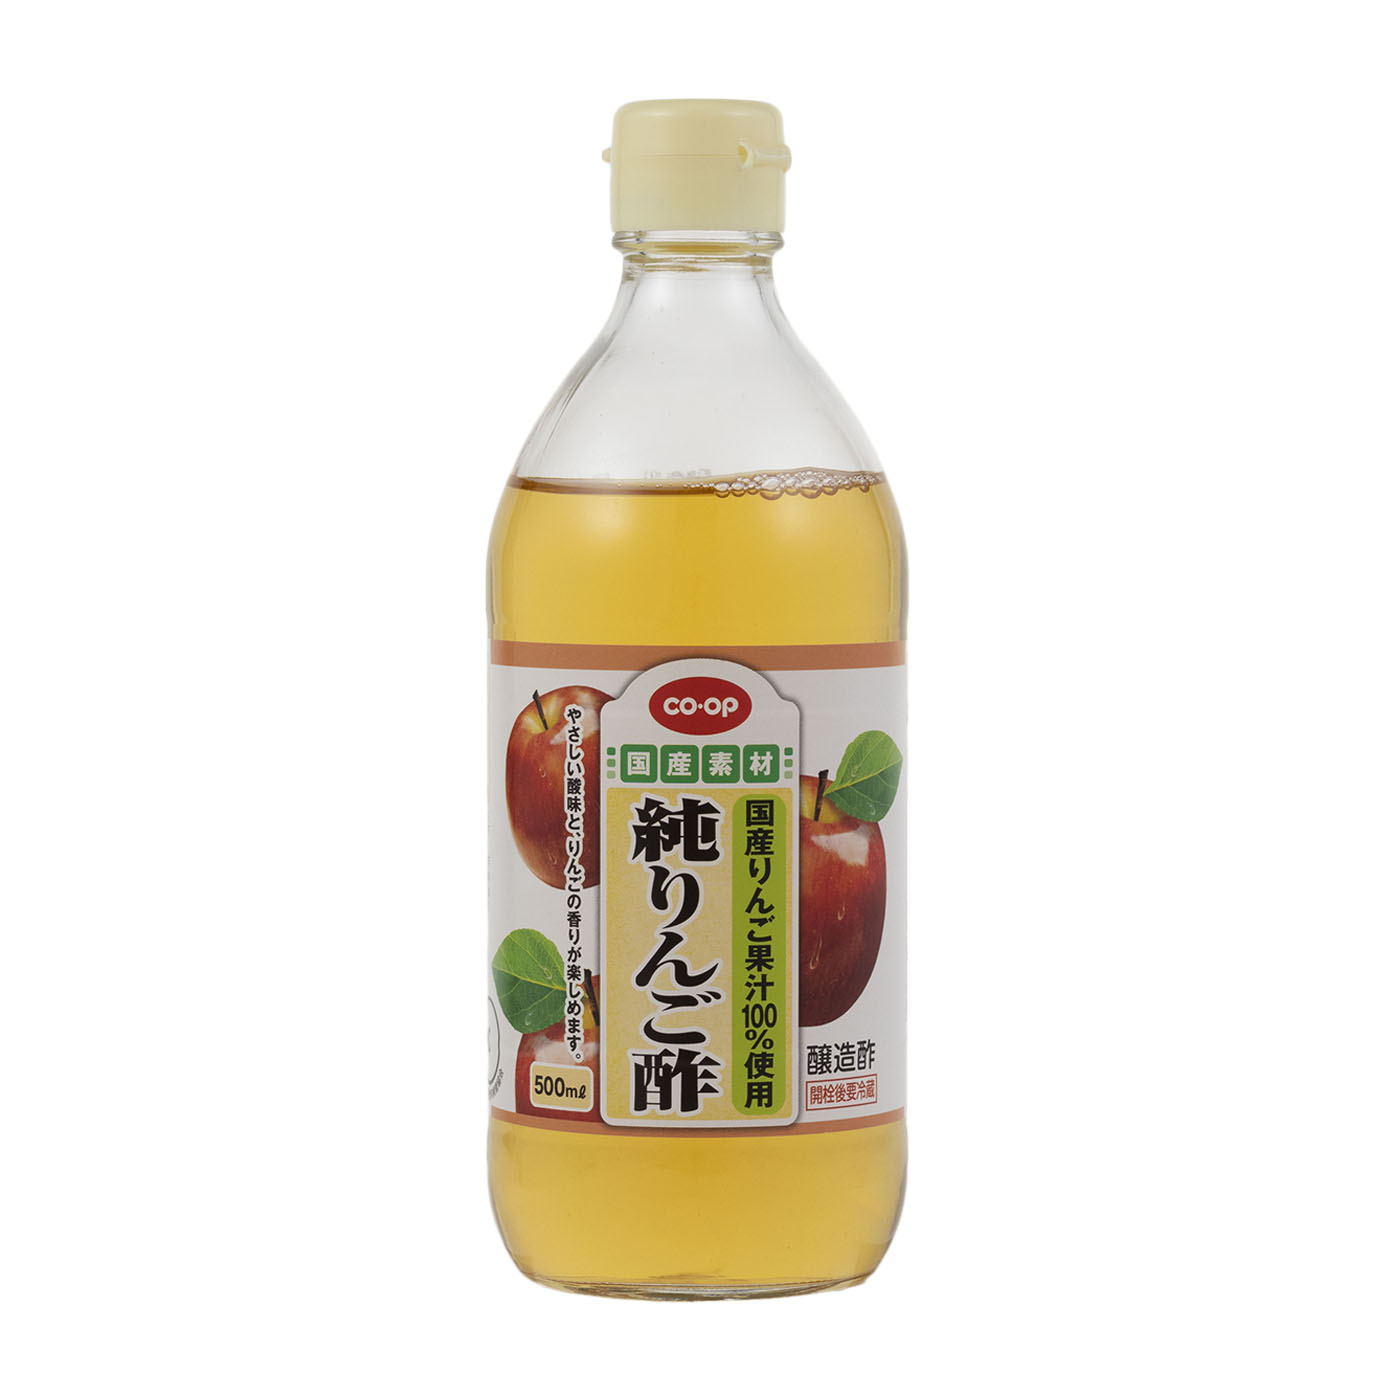 有機りんごの酢 1L×3本 内堀醸造 フルーツビネガー 1000ml 有機りんご酢 果実酢 有機JAS認定 飲用酢 希釈タイプ - 調味料